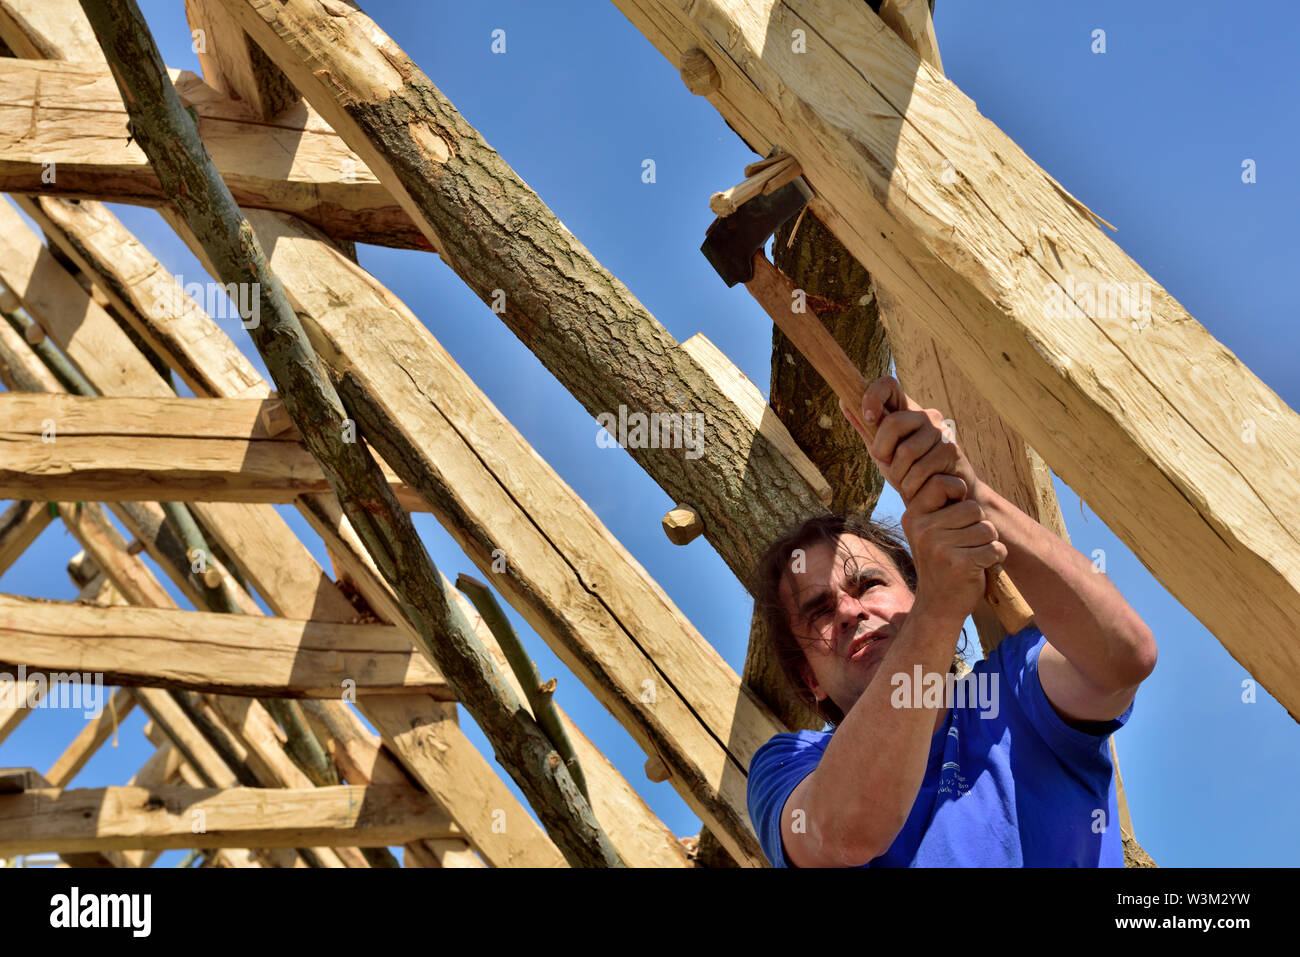 Tischler Trimmen eines gemeinsamen Verriegelung peg in einem neuen traditionelle mittelalterliche Eiche Holz gerahmt Gebäude zu bauen Stockfoto